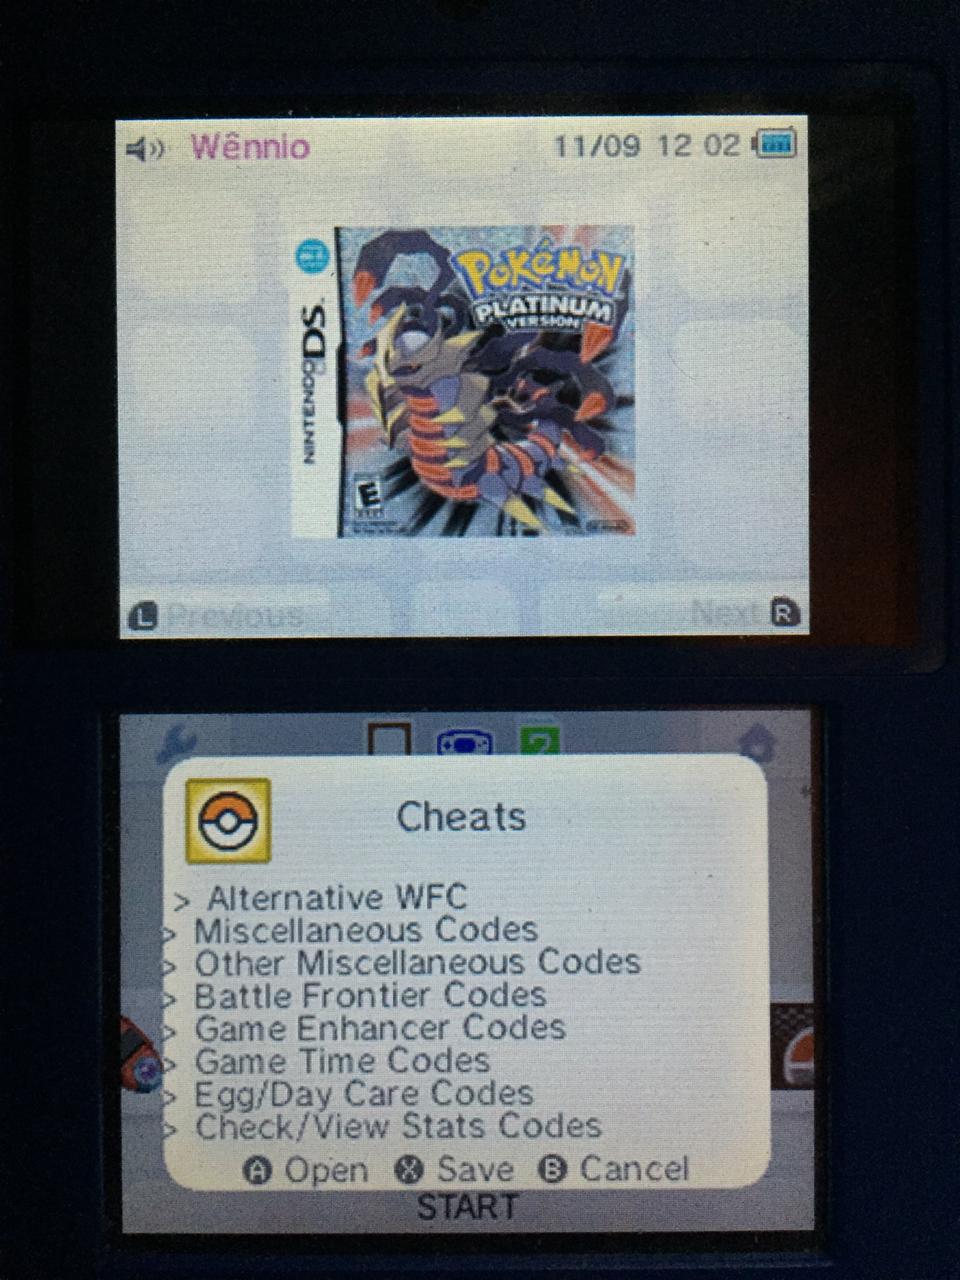 Pokémon Fusion 2 - SoulSilver - Nintendo DS ROMs Hack - Download